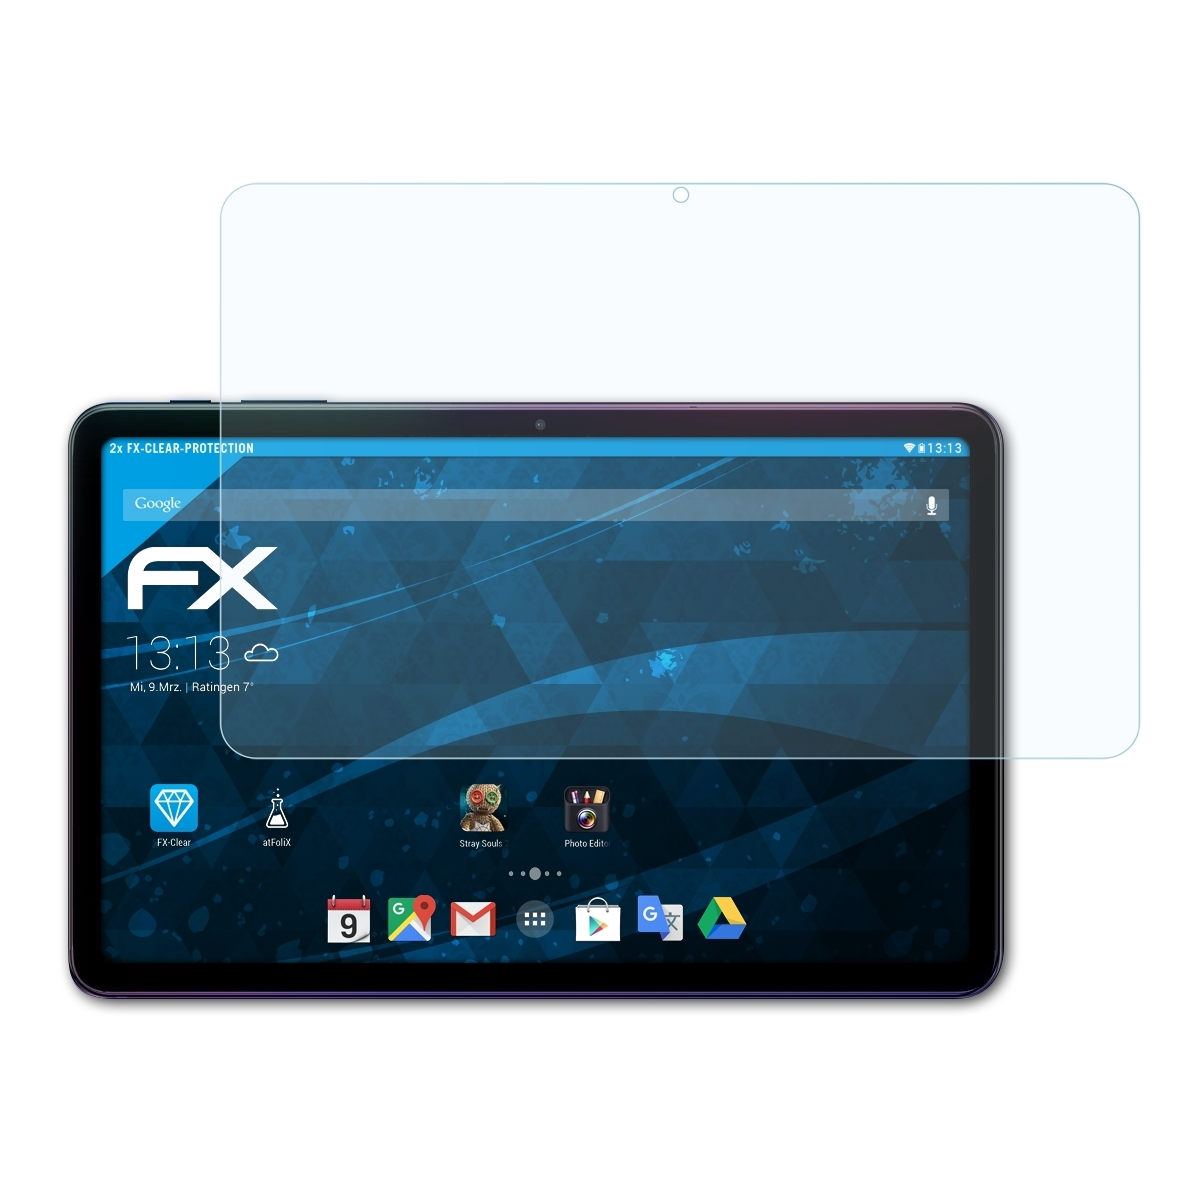 ATFOLIX 2x FX-Clear Displayschutz(für Pro) 40 iPlay Alldocube